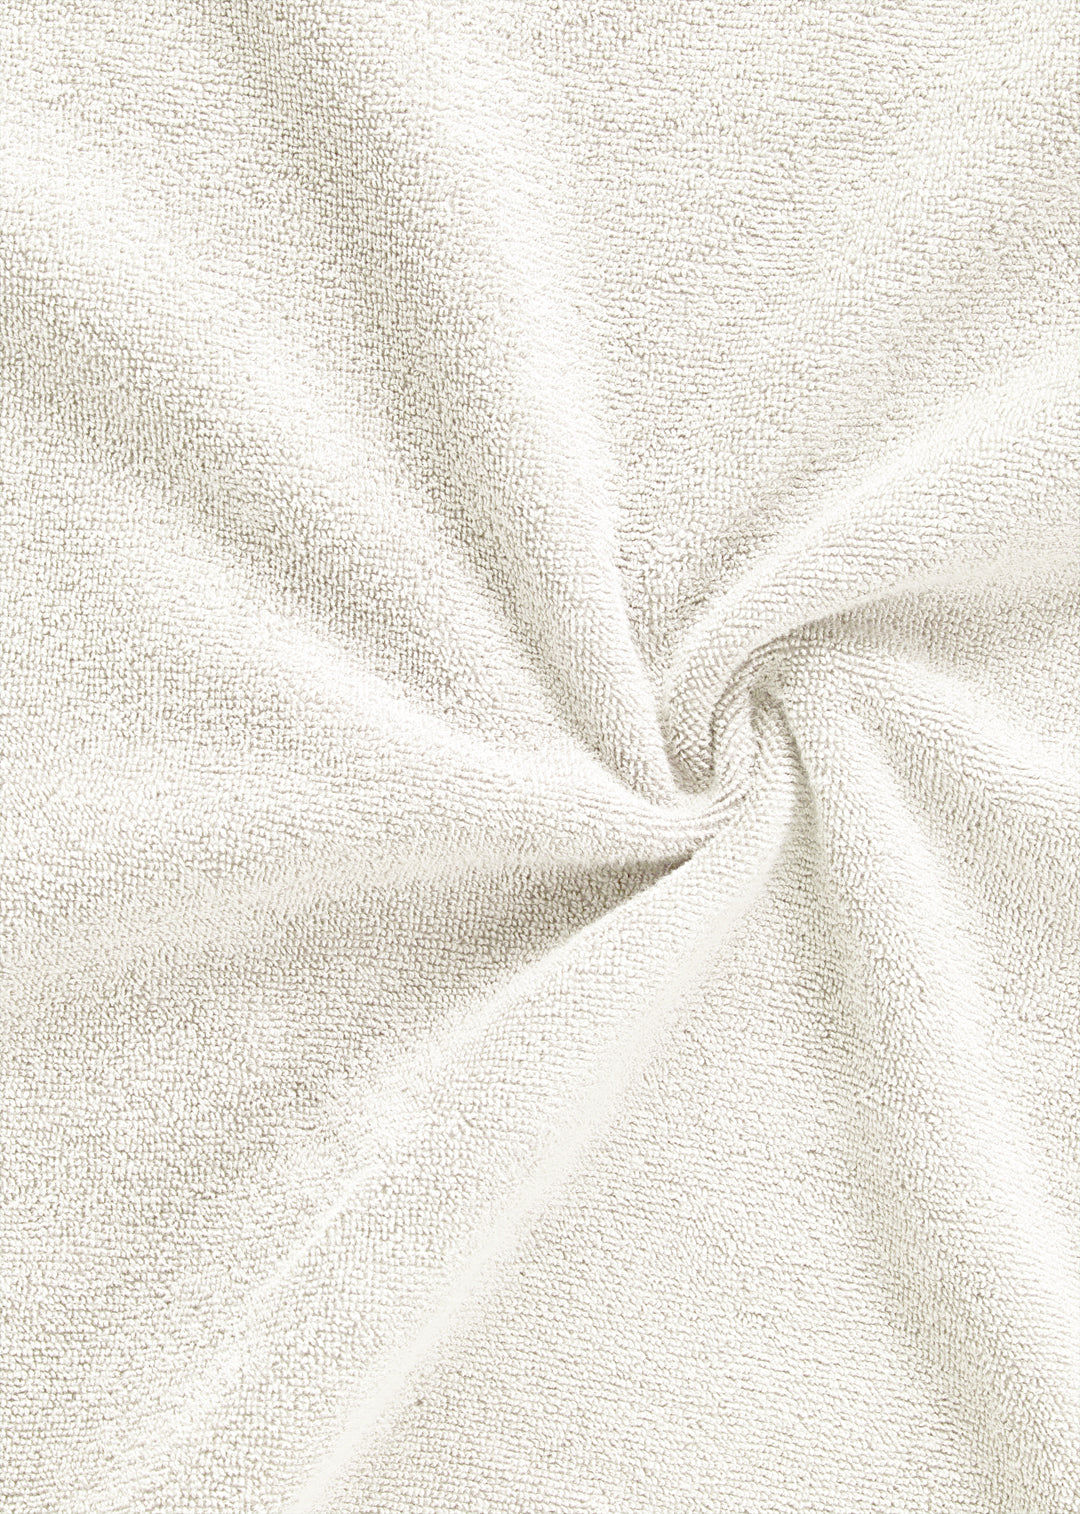 Handtuch Baumwolle Weiß 30 x 50 cm